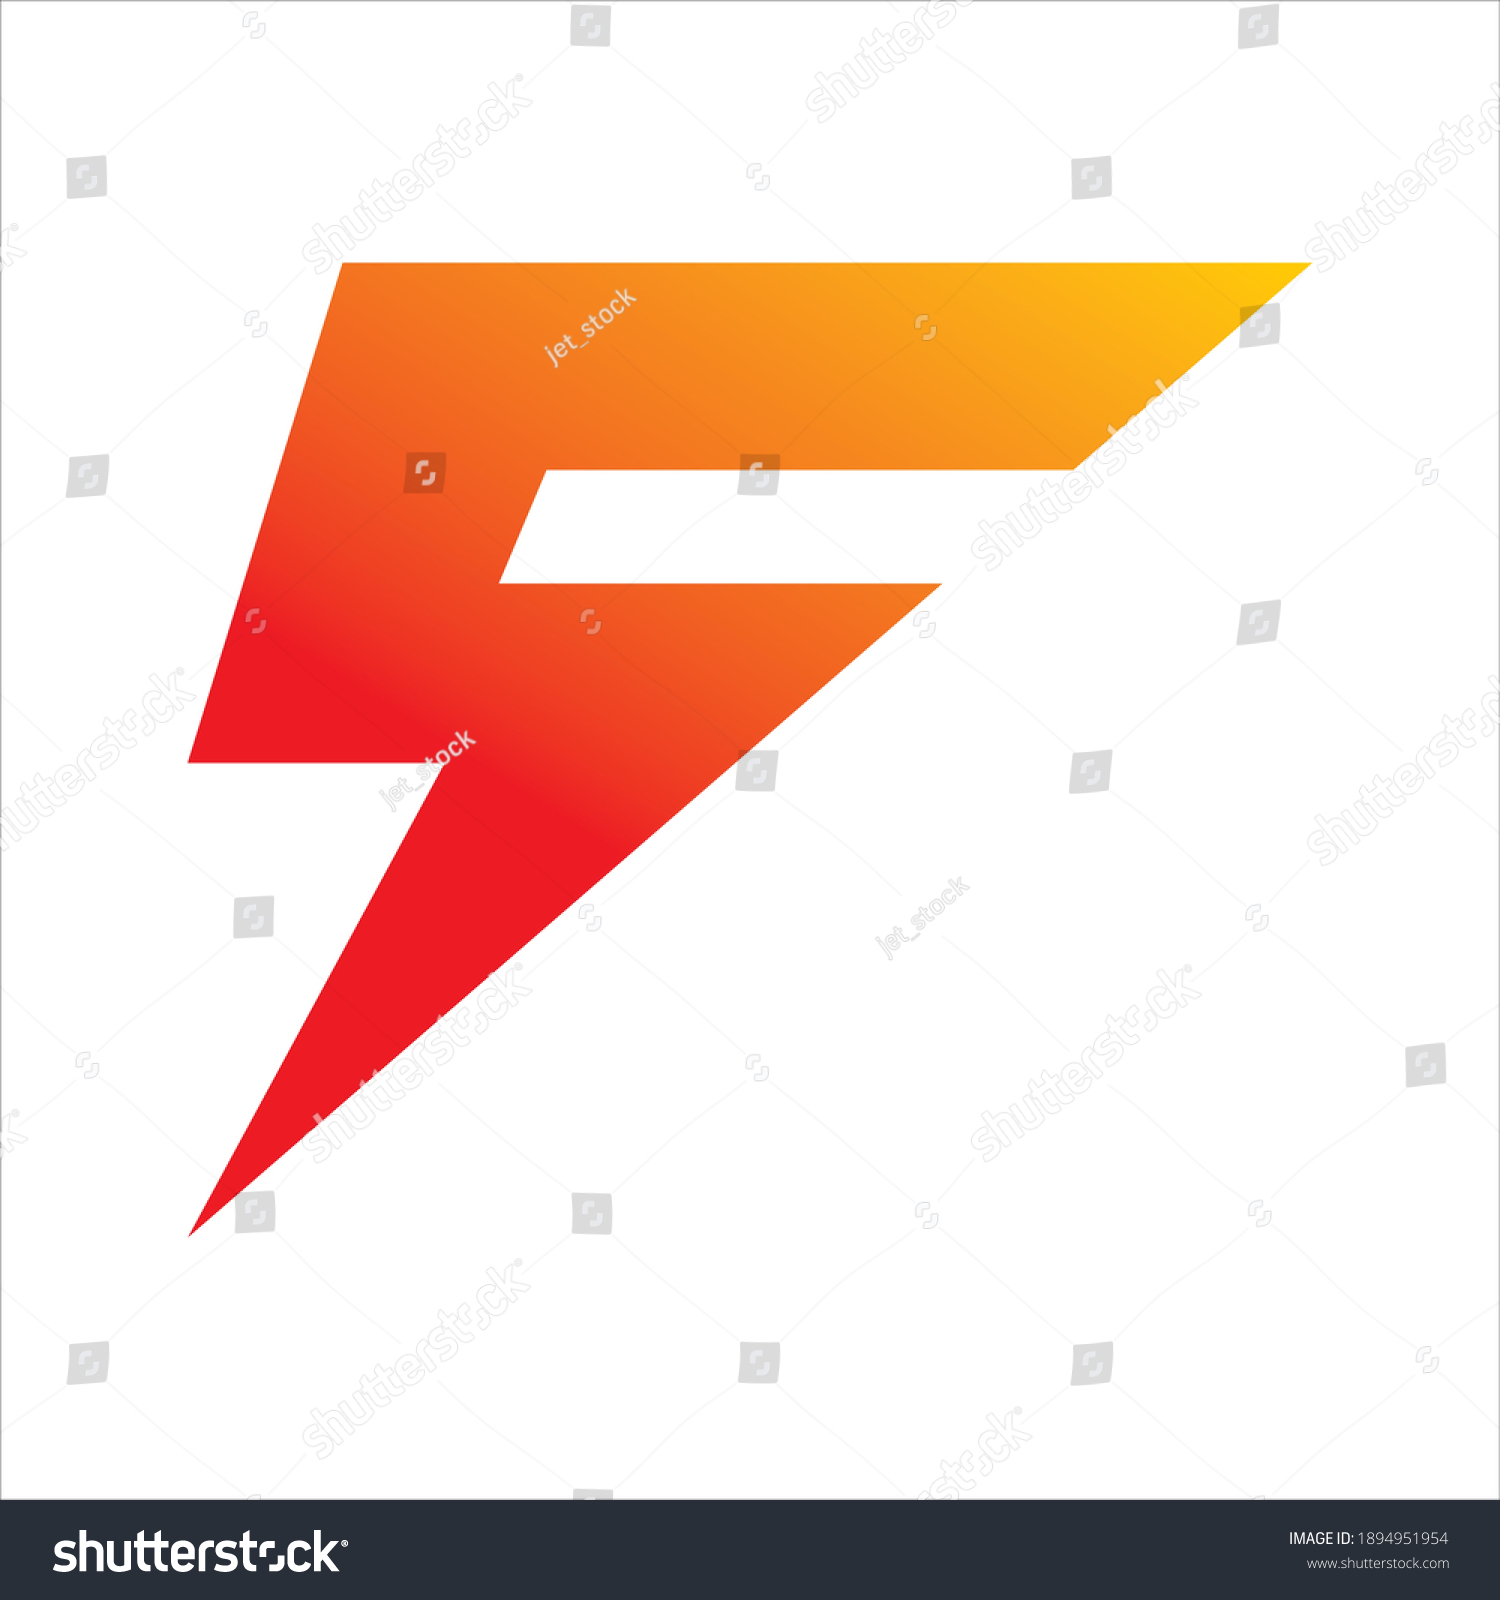 5 letter f lightning logo design - Royalty Free Stock Vector 1894951954 ...